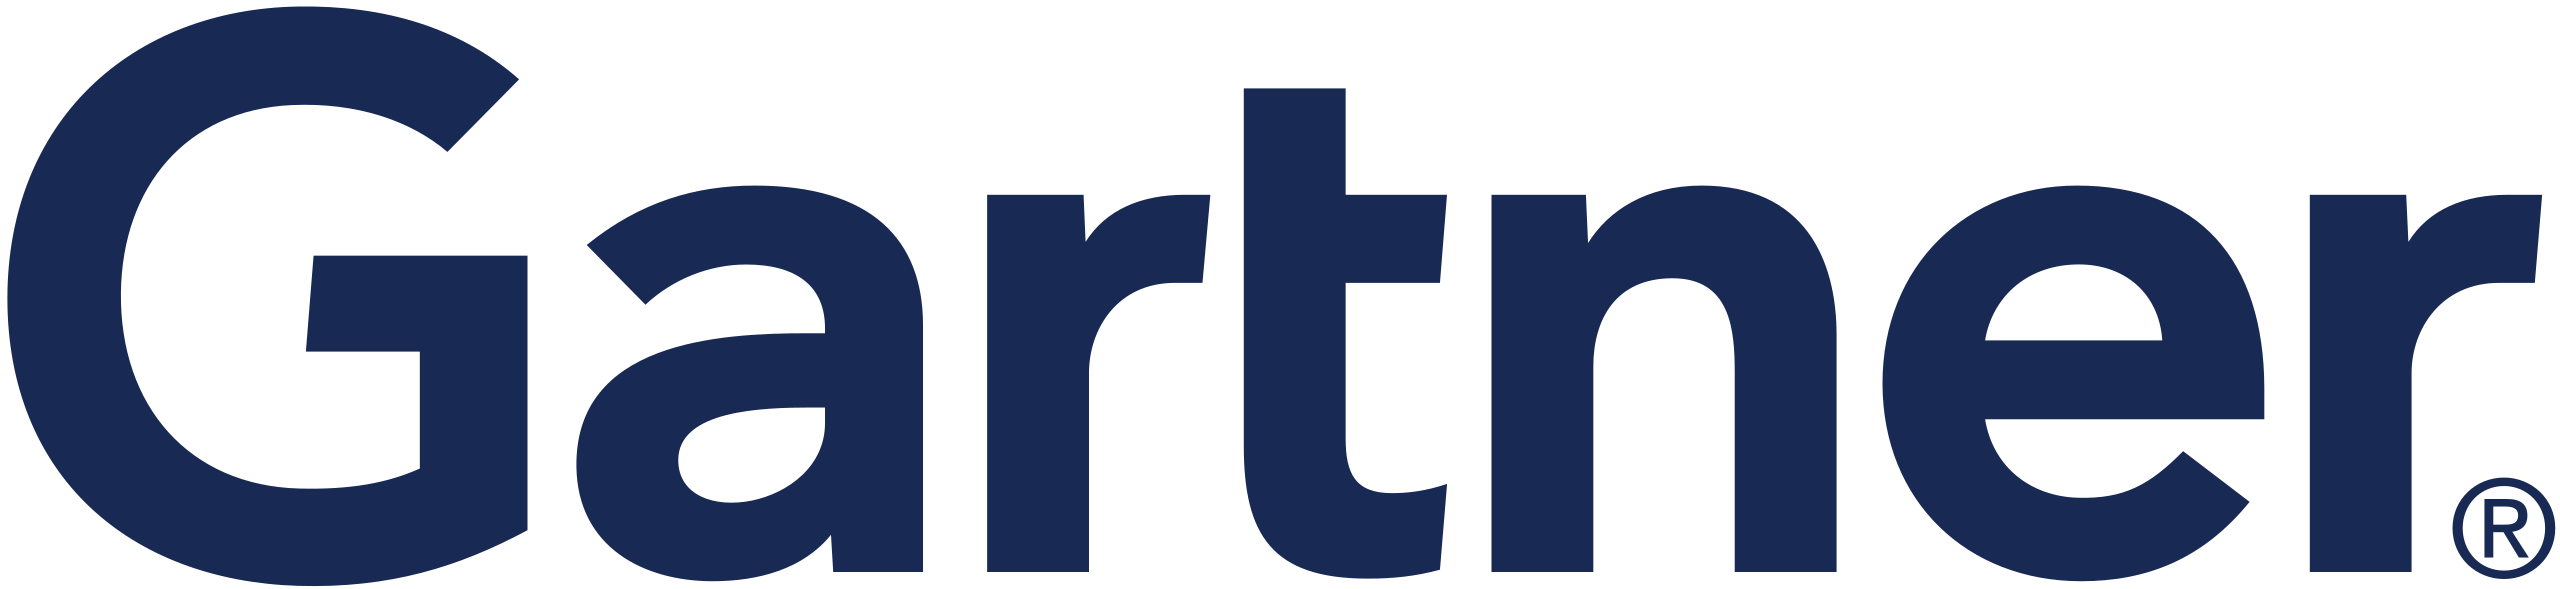 Gartner_logo.svg (1)